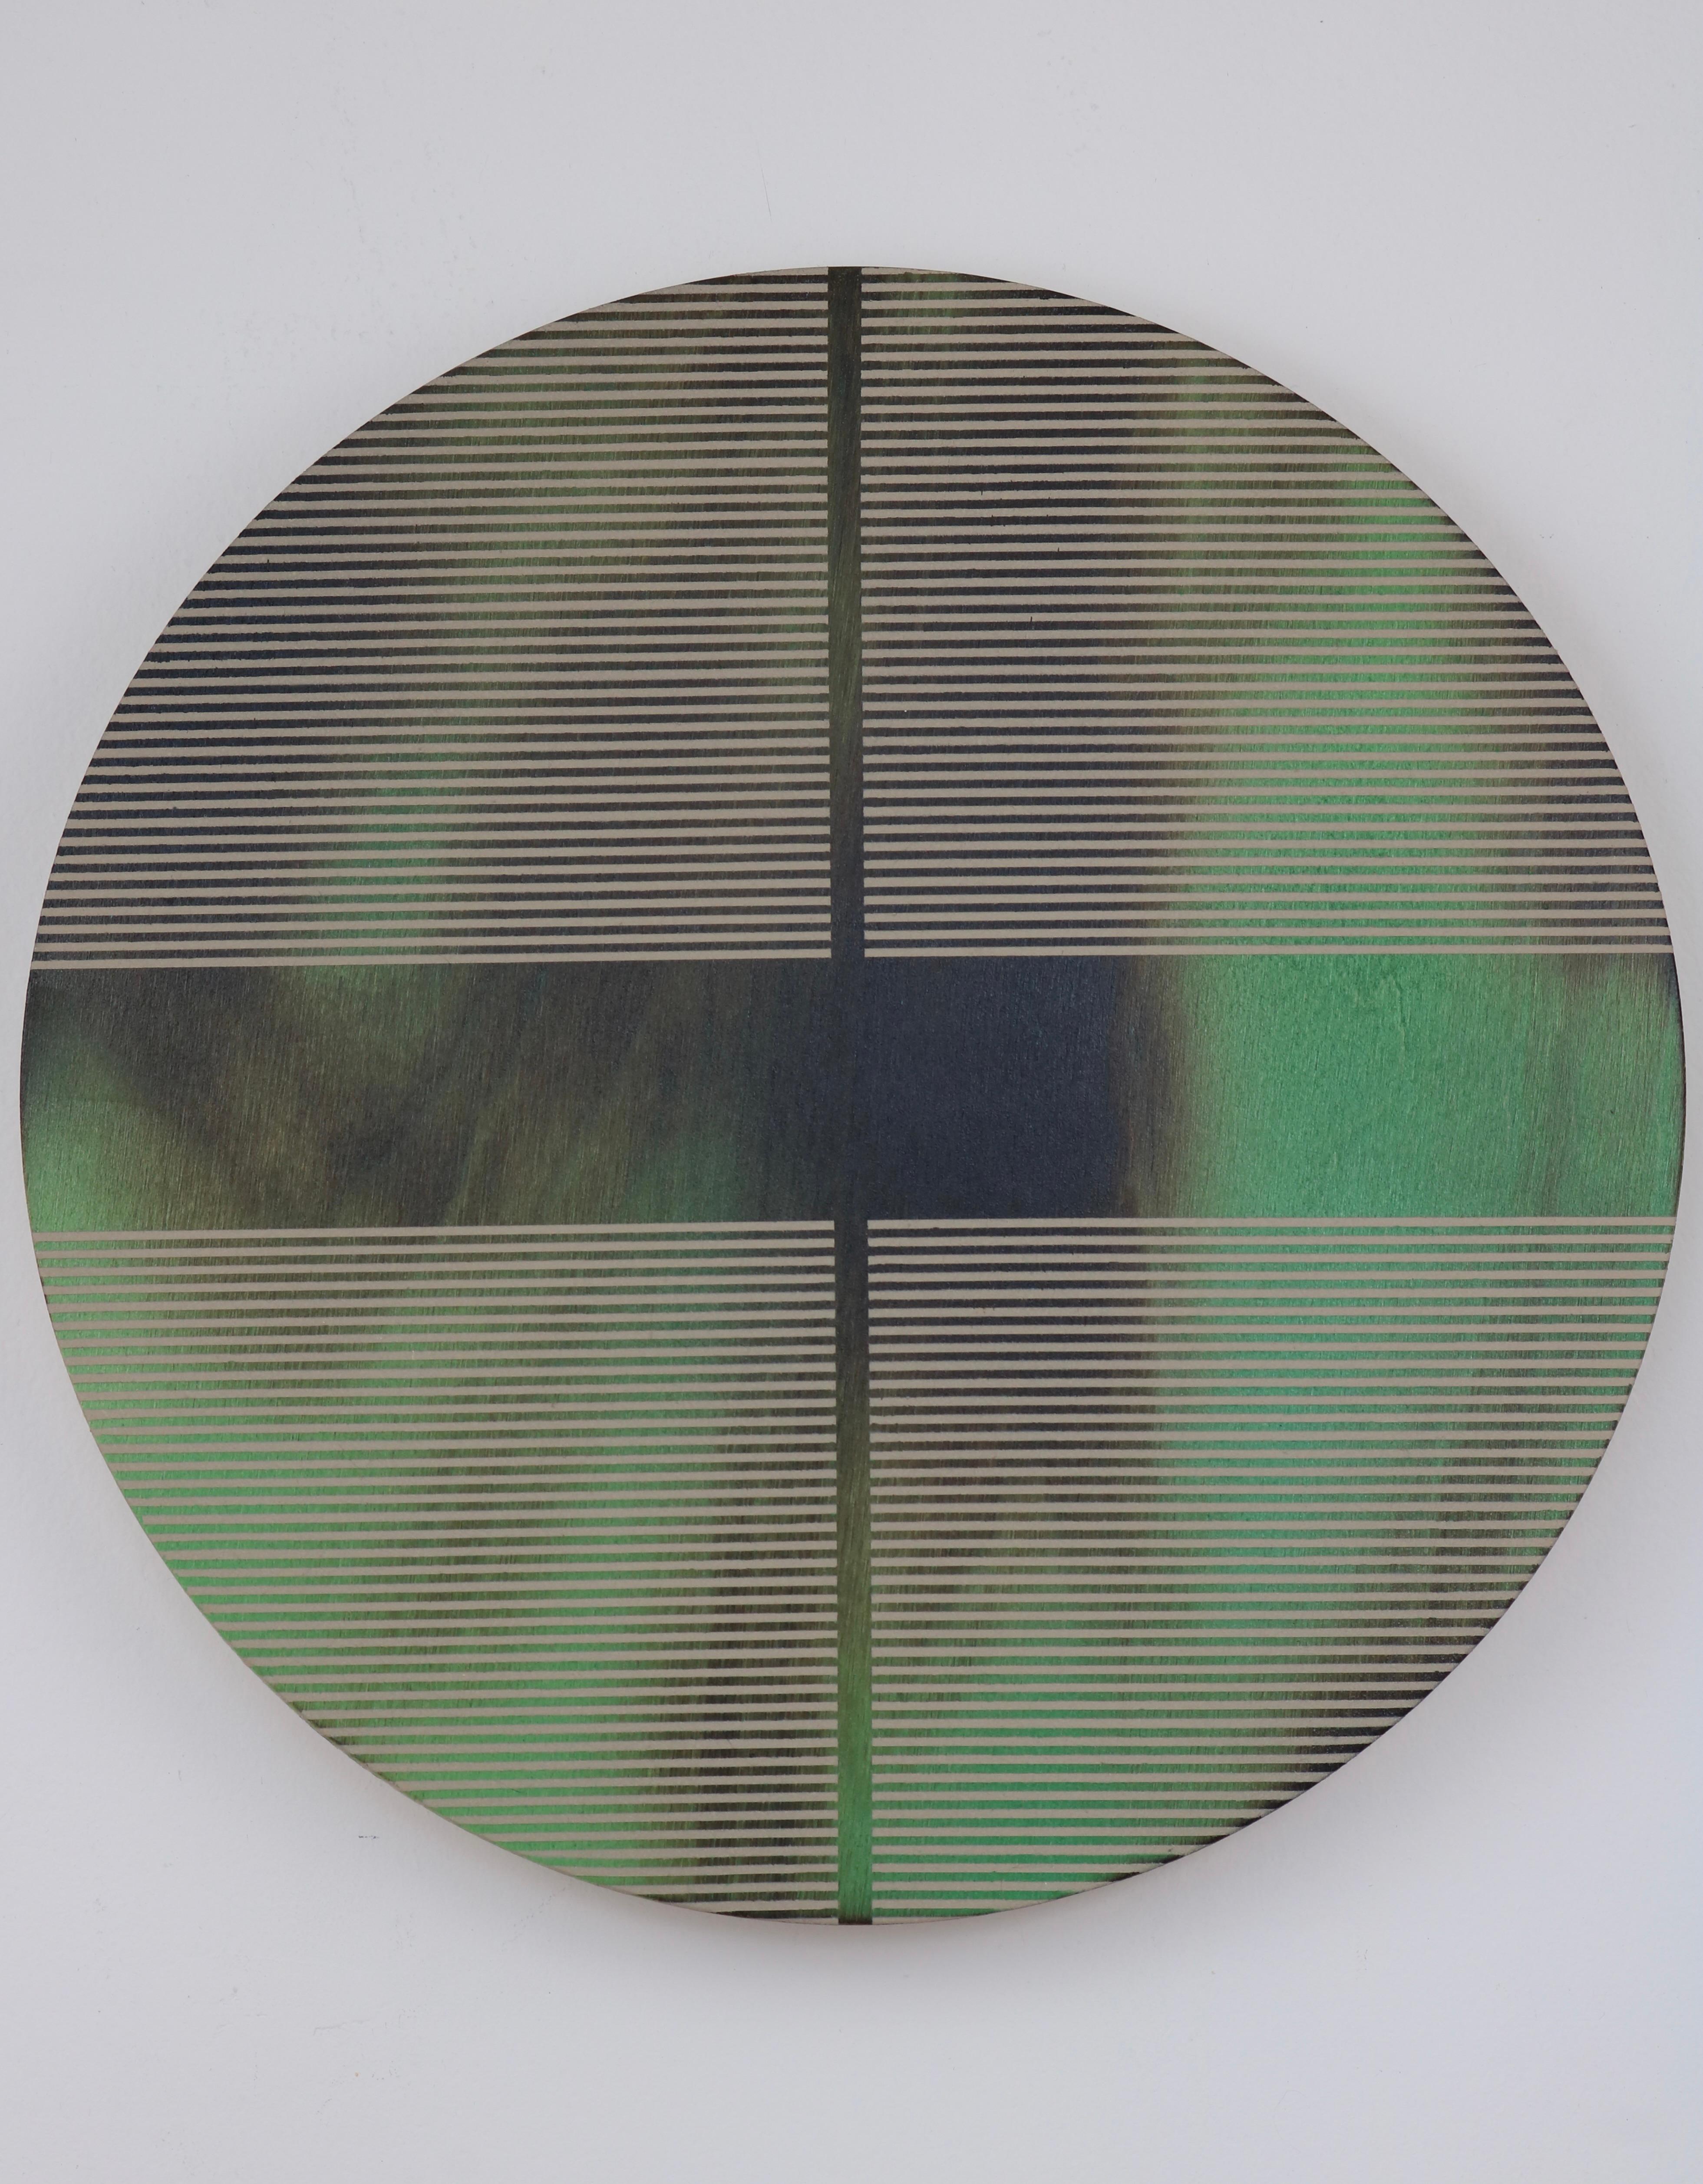 Grüne Jade Pille (minimalistisches rundes Gemälde auf Holz dopamine Kunst) – Mixed Media Art von Melisa Taylor Metzger